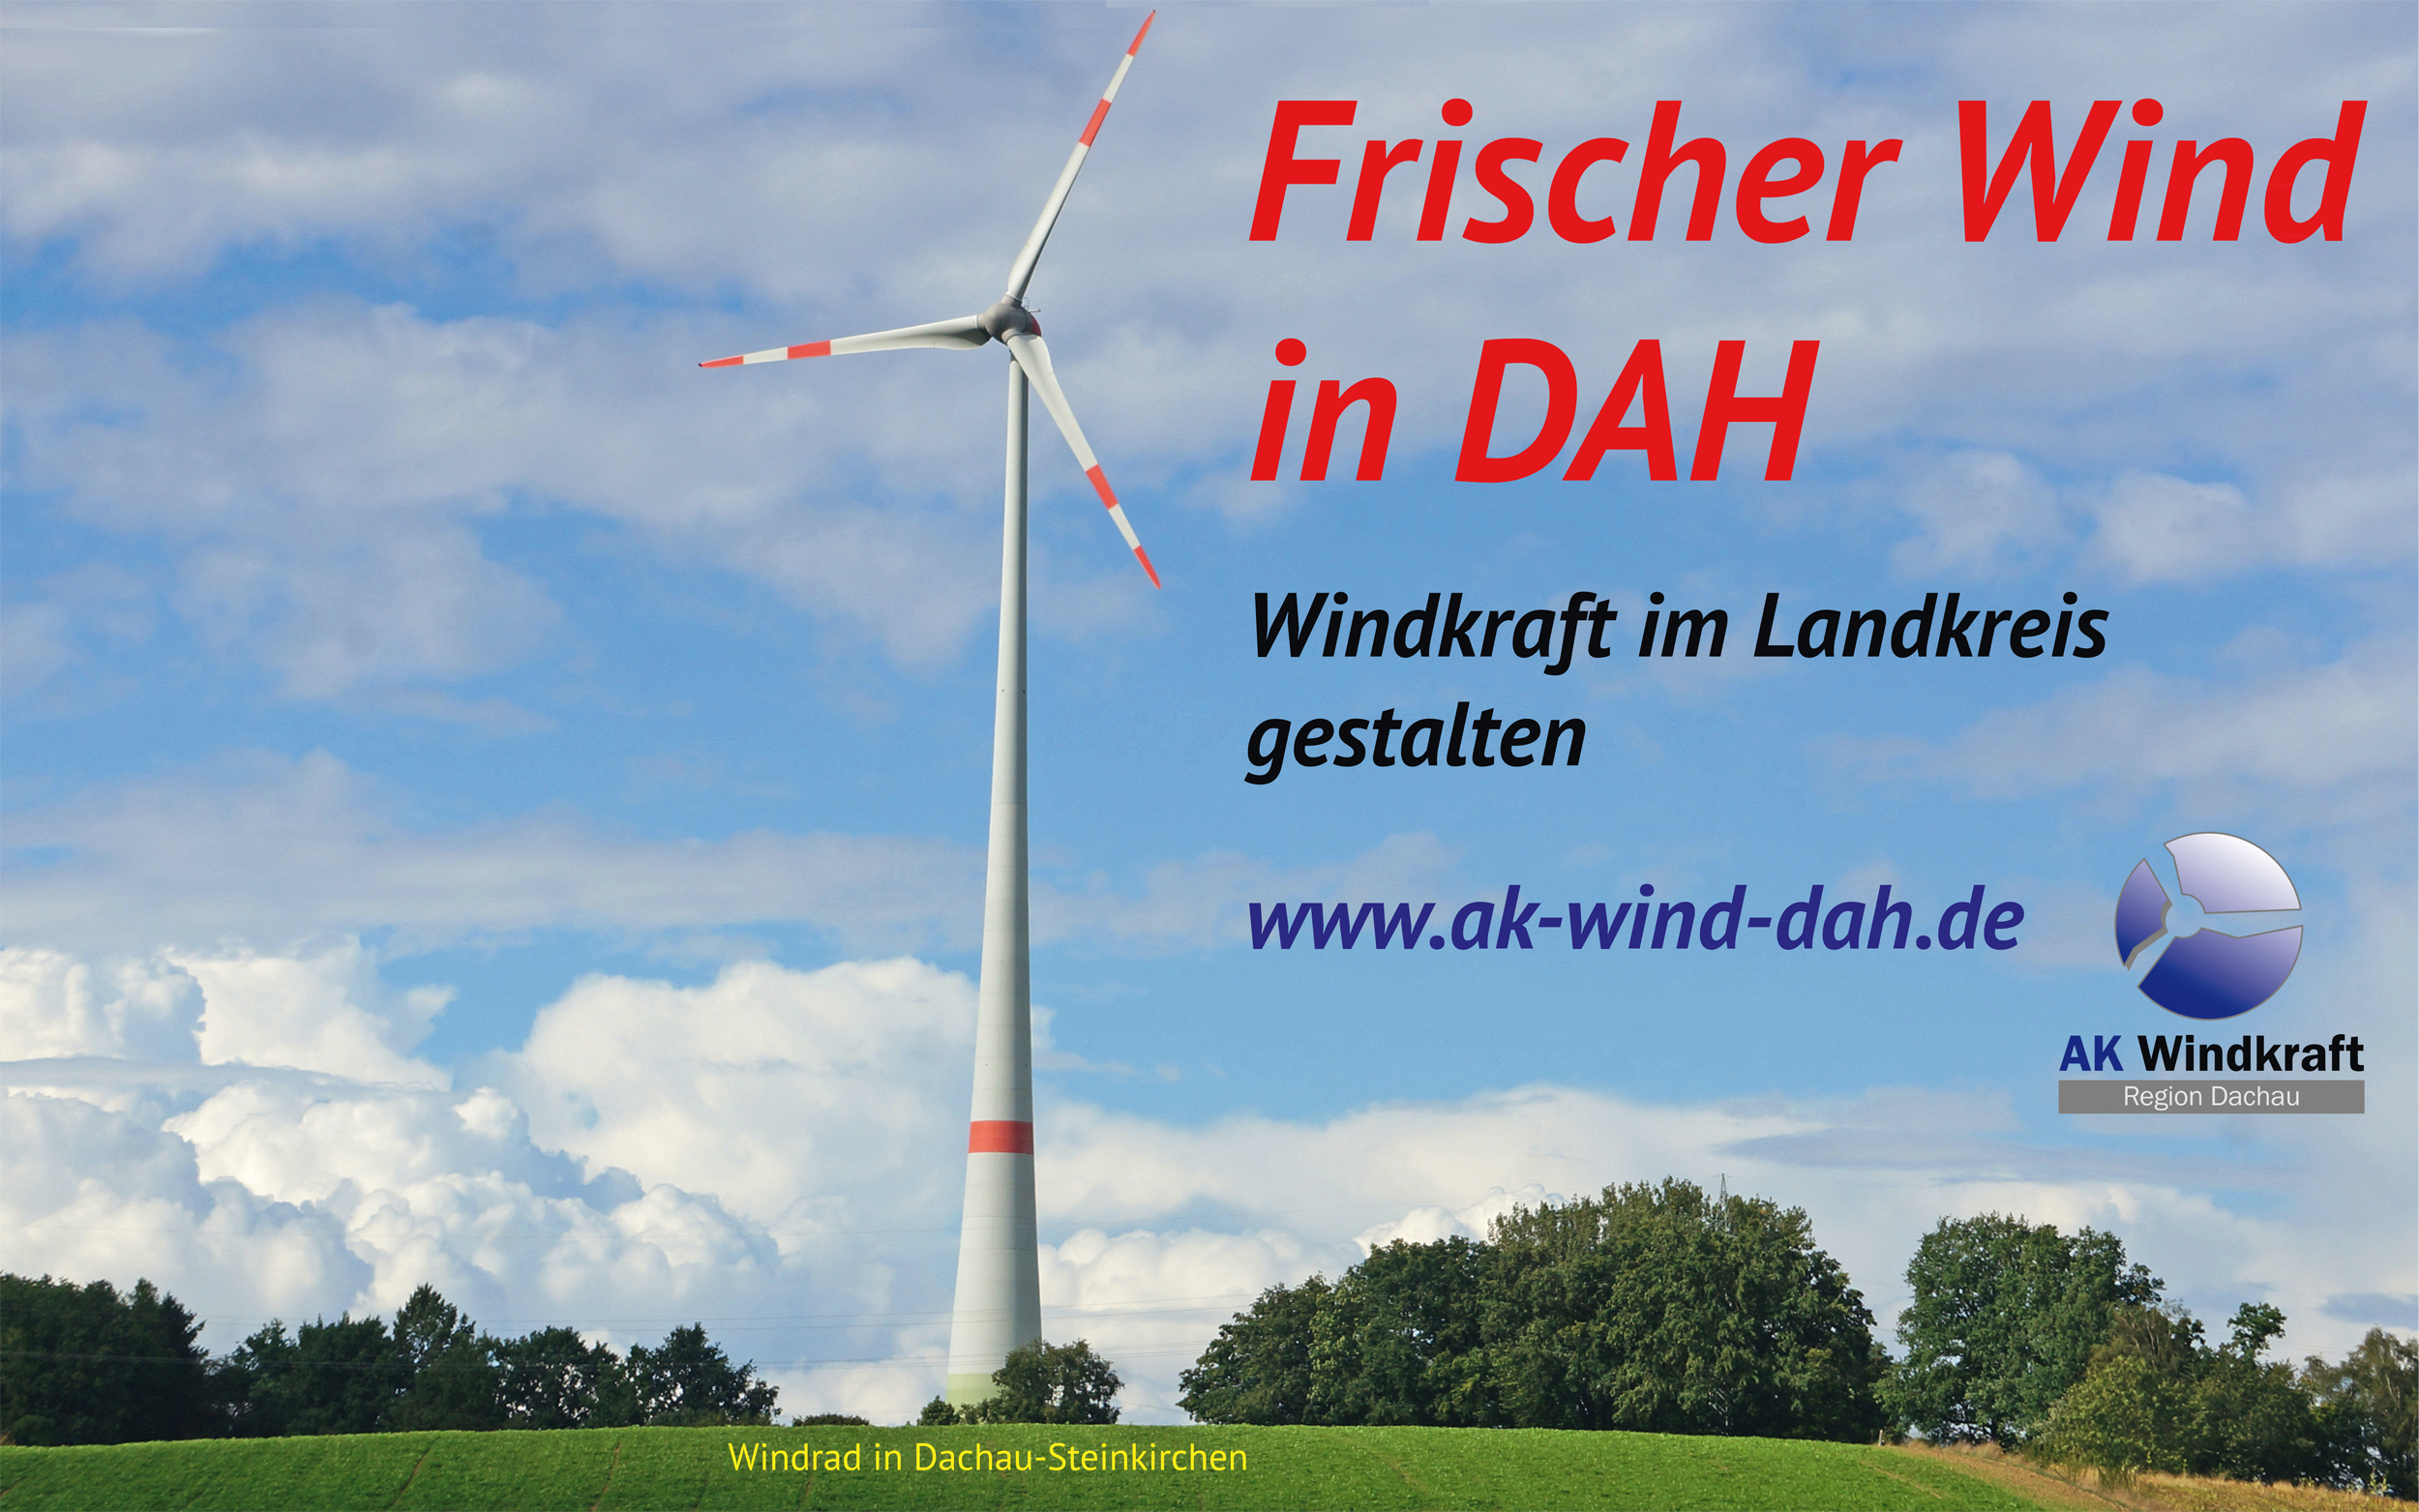 Frischer Wind in DAH - Windkraft im Landkreis gestalten